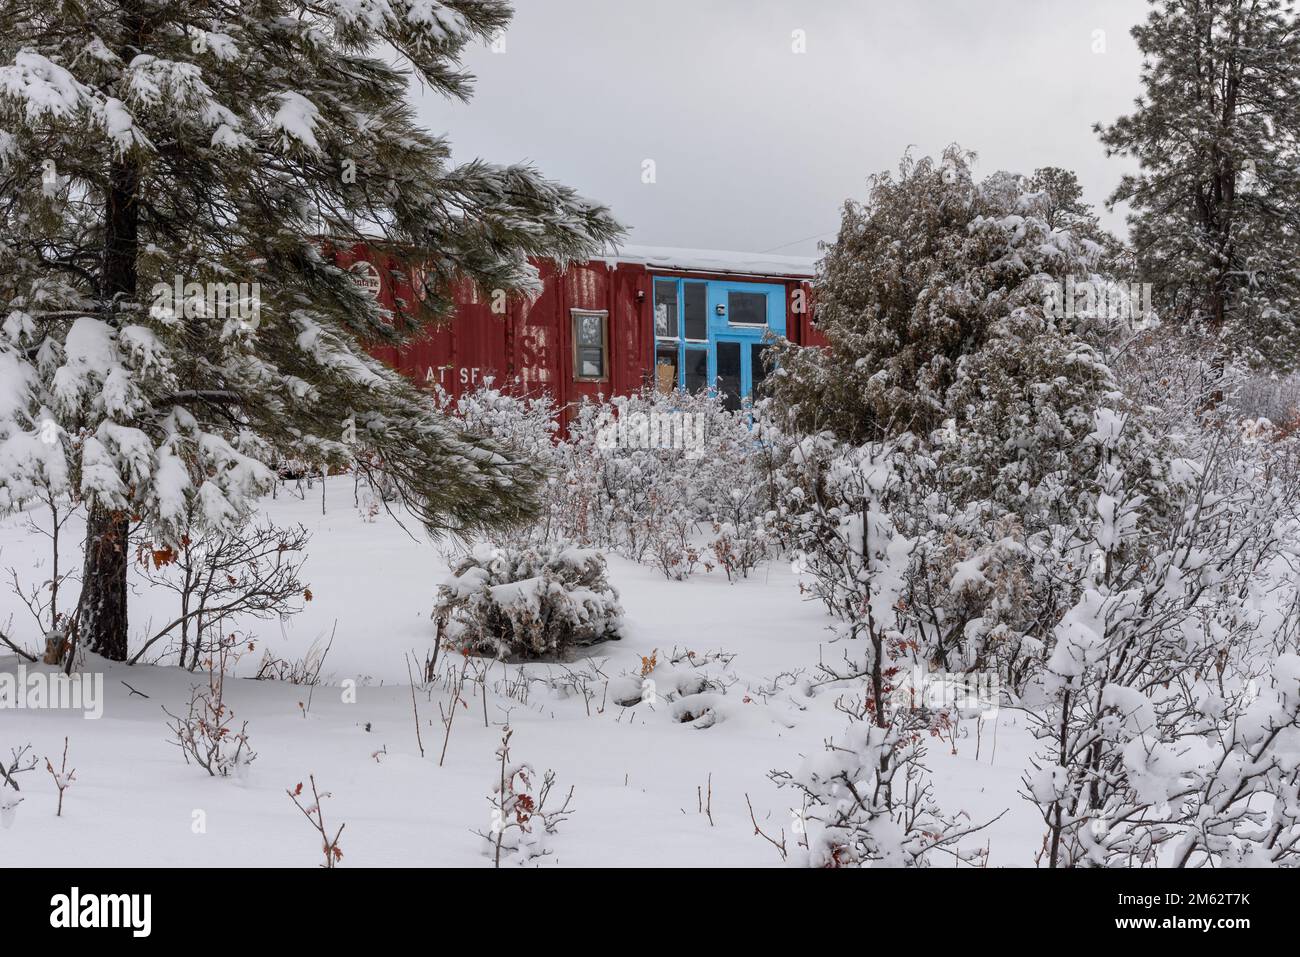 In einem verschneiten, bewaldeten Gebiet in New Mexico, USA, wurde ein helldunkelroter Güterwagen in Wohnraum mit großen Fenstern und Türen in Türkis umgebaut. Stockfoto